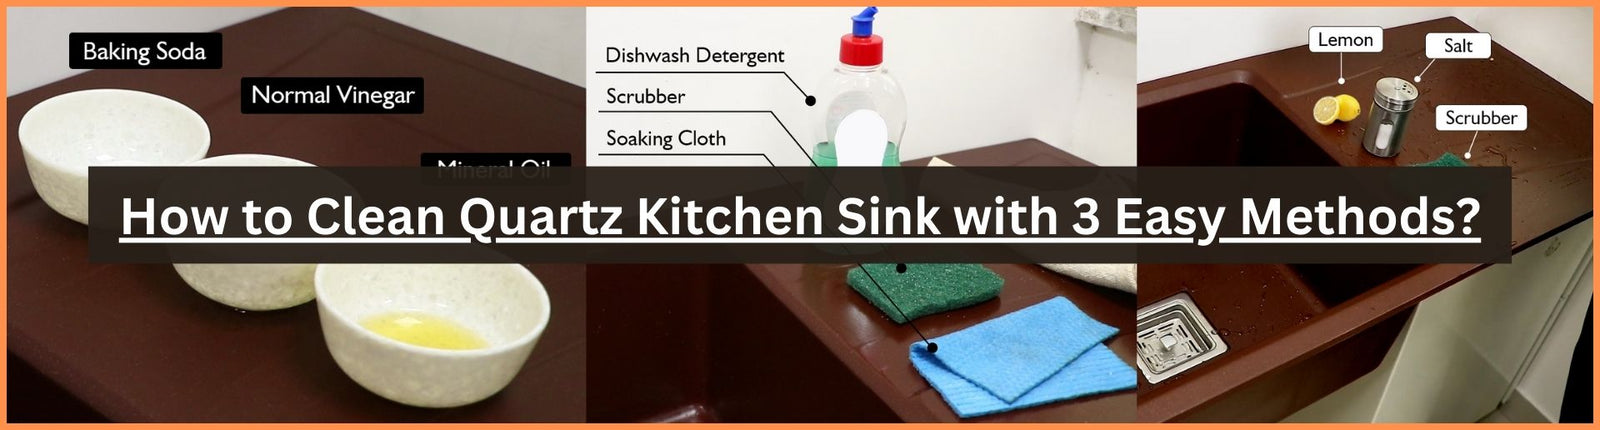 How to Clean Quartz Kitchen Sink